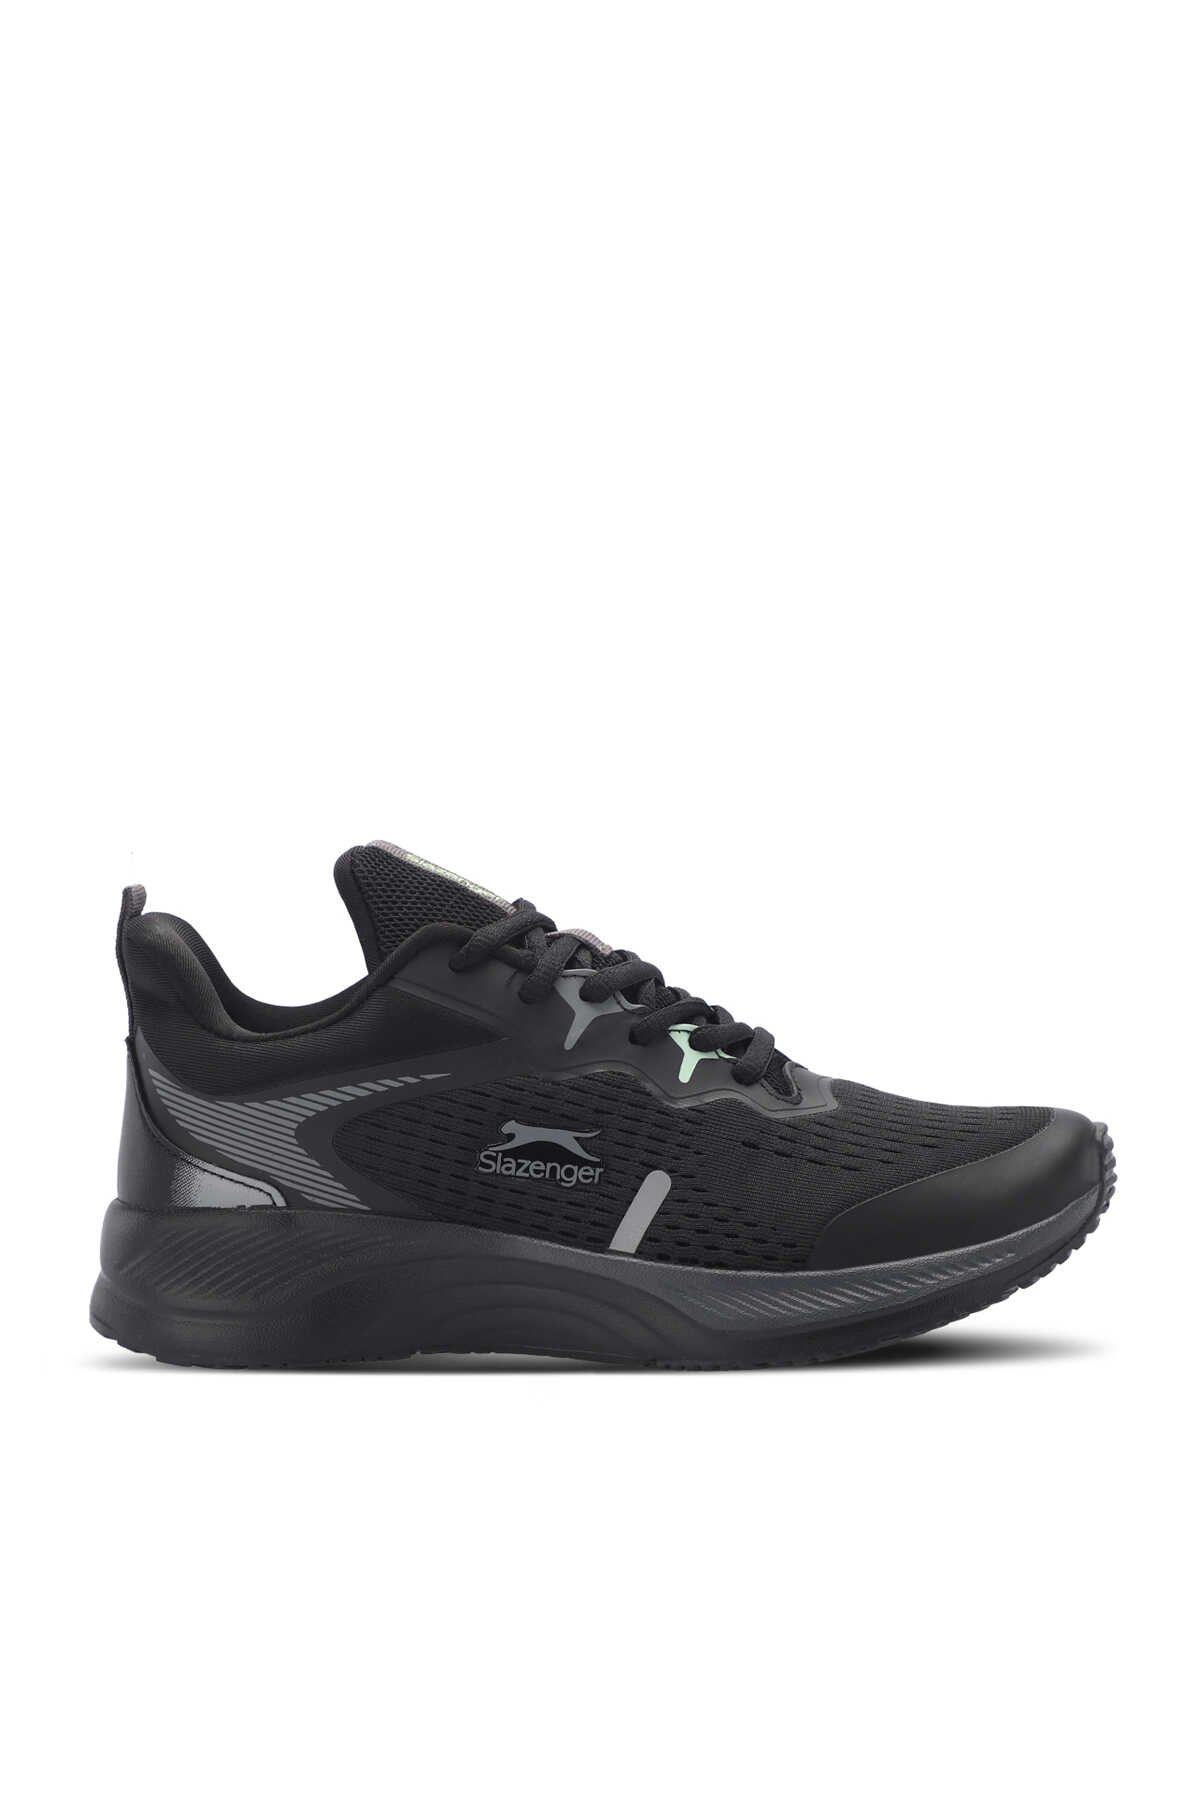 Slazenger - Slazenger WATER Kadın Sneaker Ayakkabı Siyah